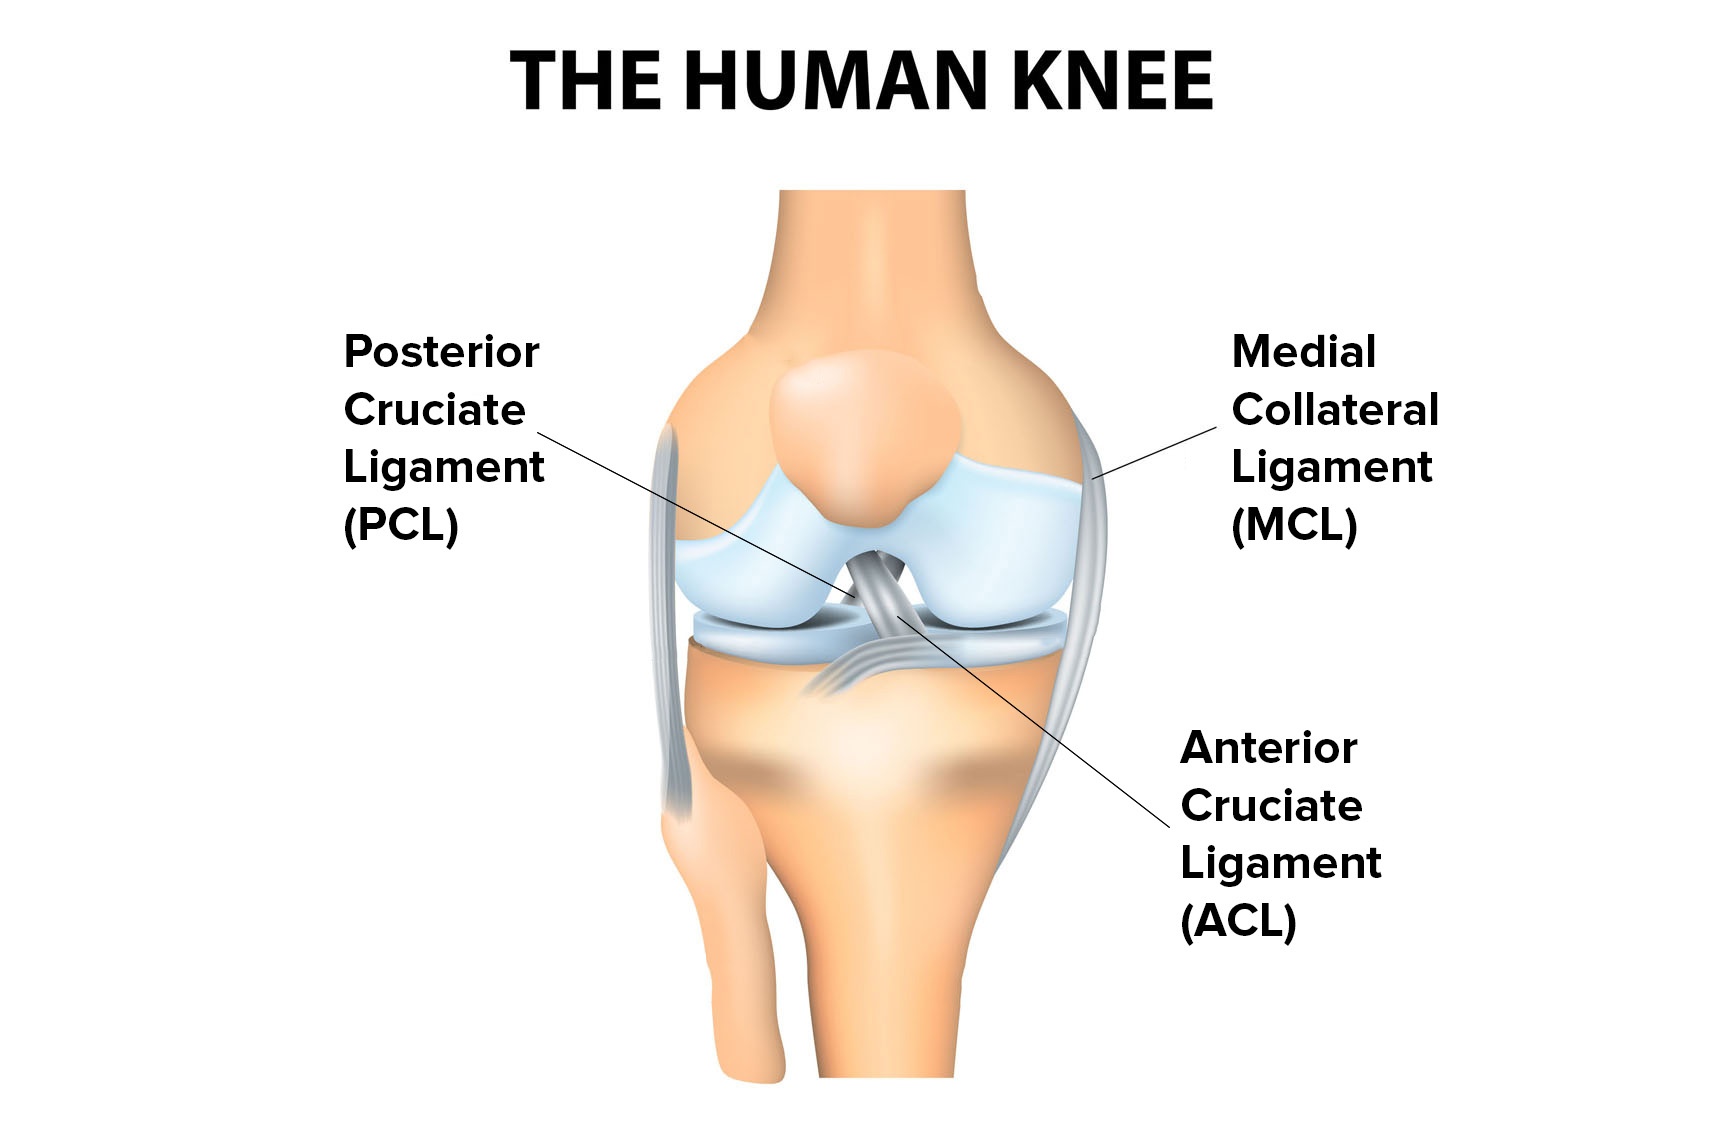 http://cdn2.hubspot.net/hubfs/458680/The_human_knee.jpg